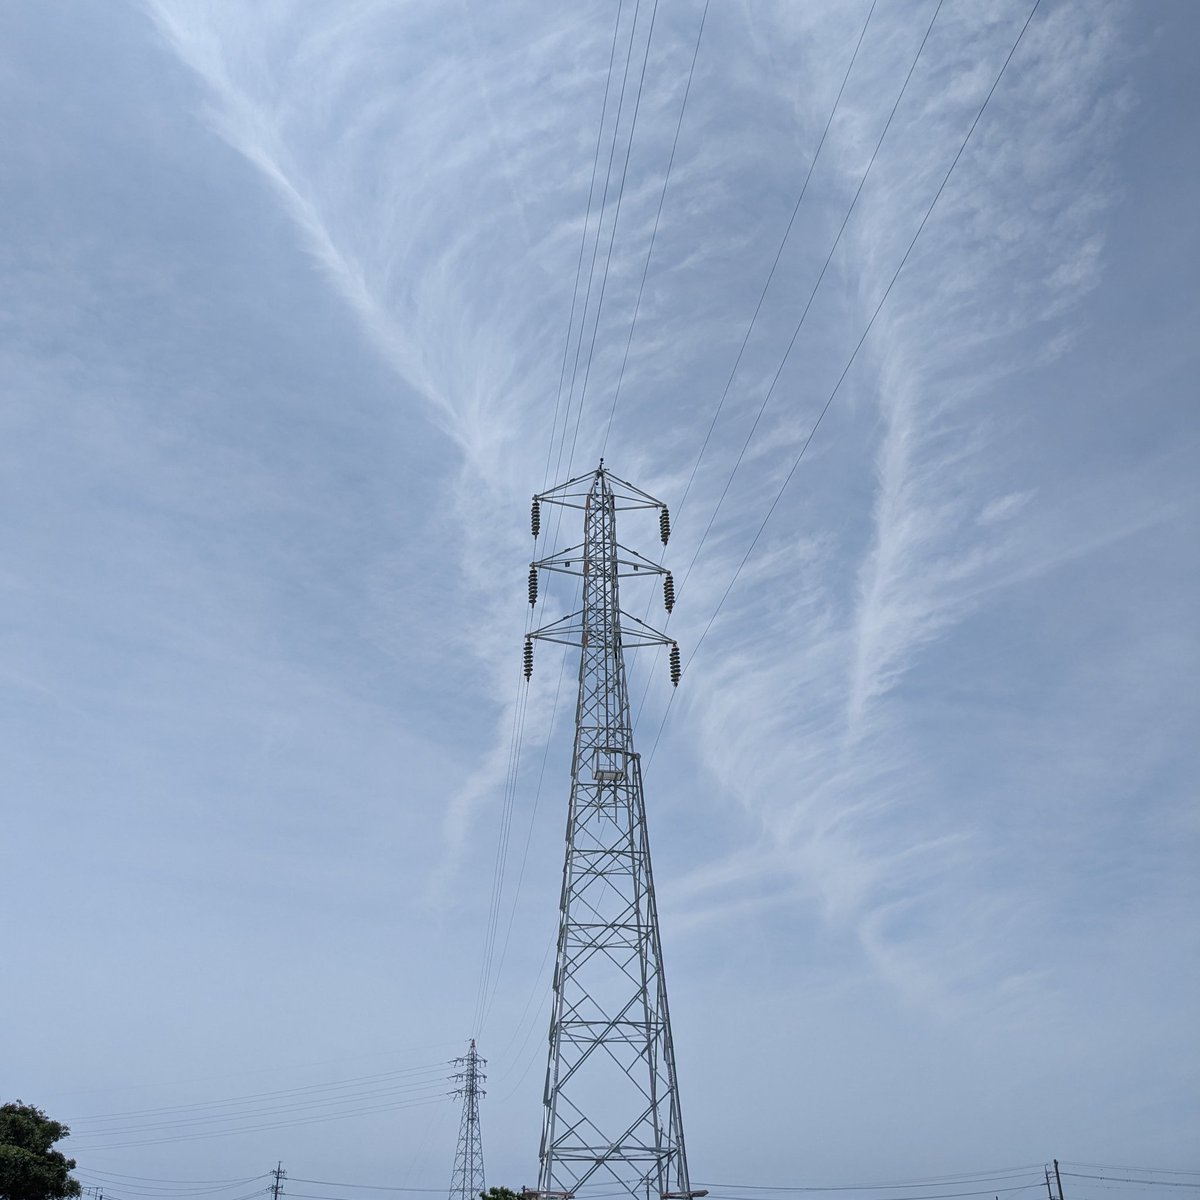 雲と鉄塔。
#土曜日の鉄塔